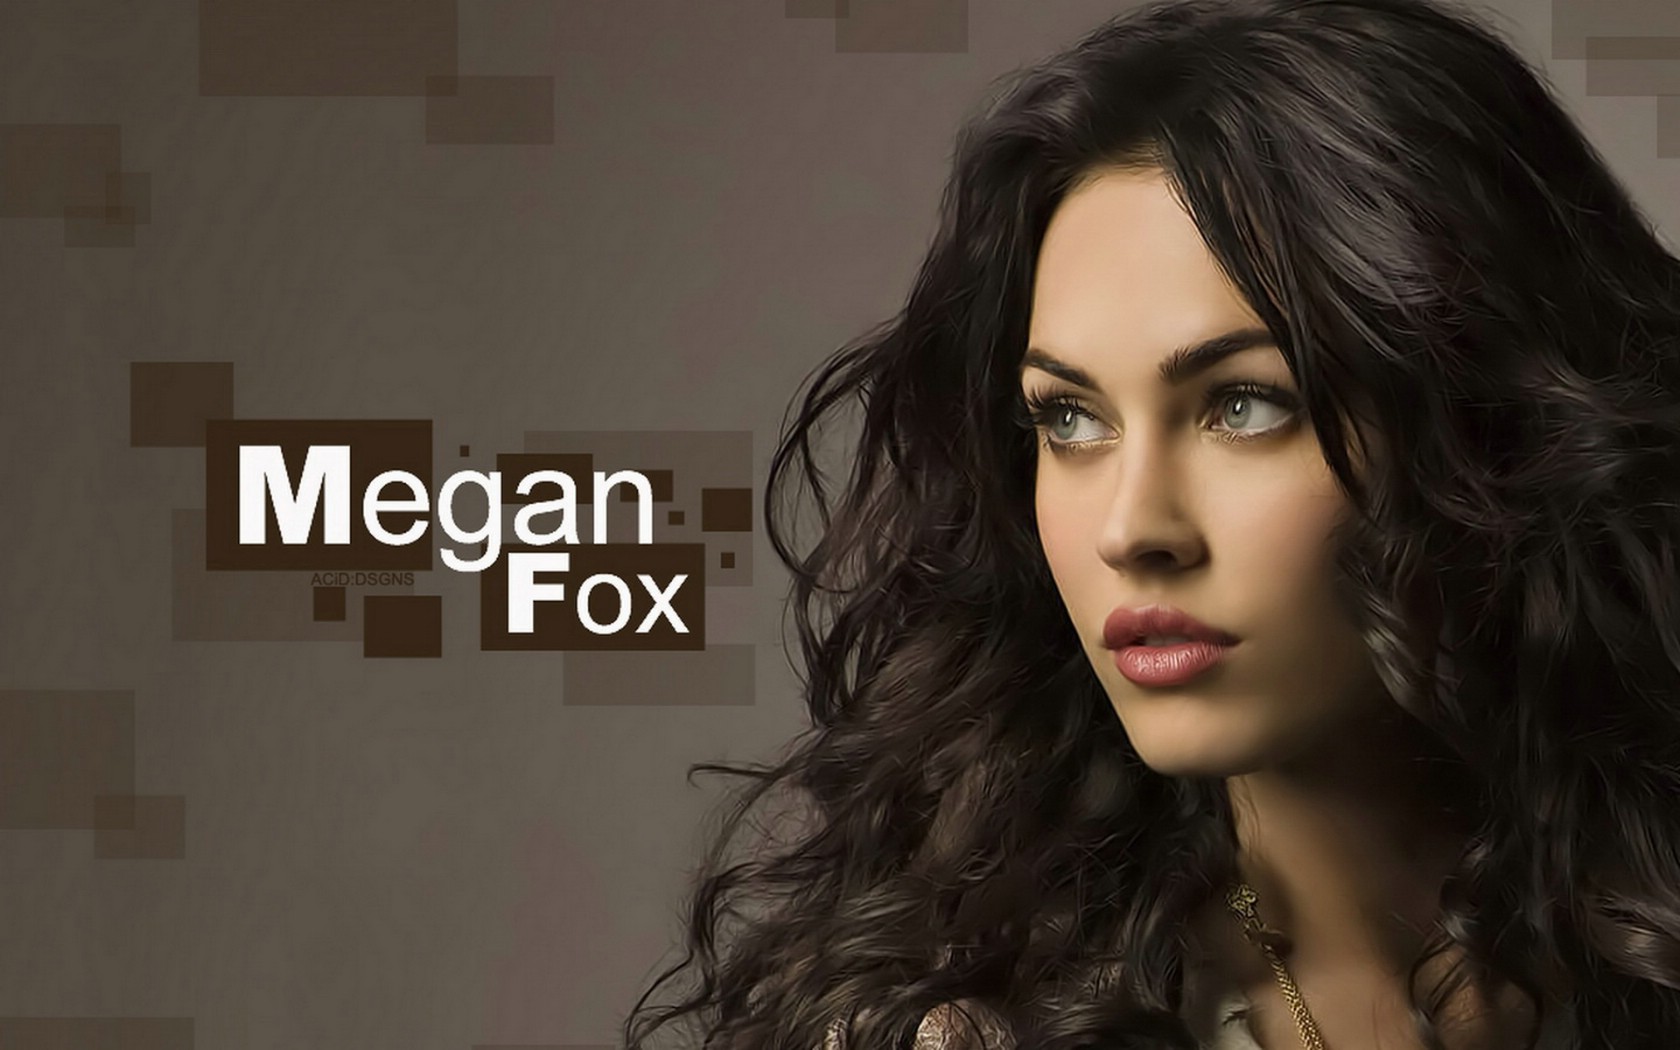 壁纸1680x1050Megan Fox 梅根 福克斯 壁纸52壁纸 Megan Fox(壁纸 Megan Fox(图片 Megan Fox(素材 明星壁纸 明星图库 明星图片素材桌面壁纸